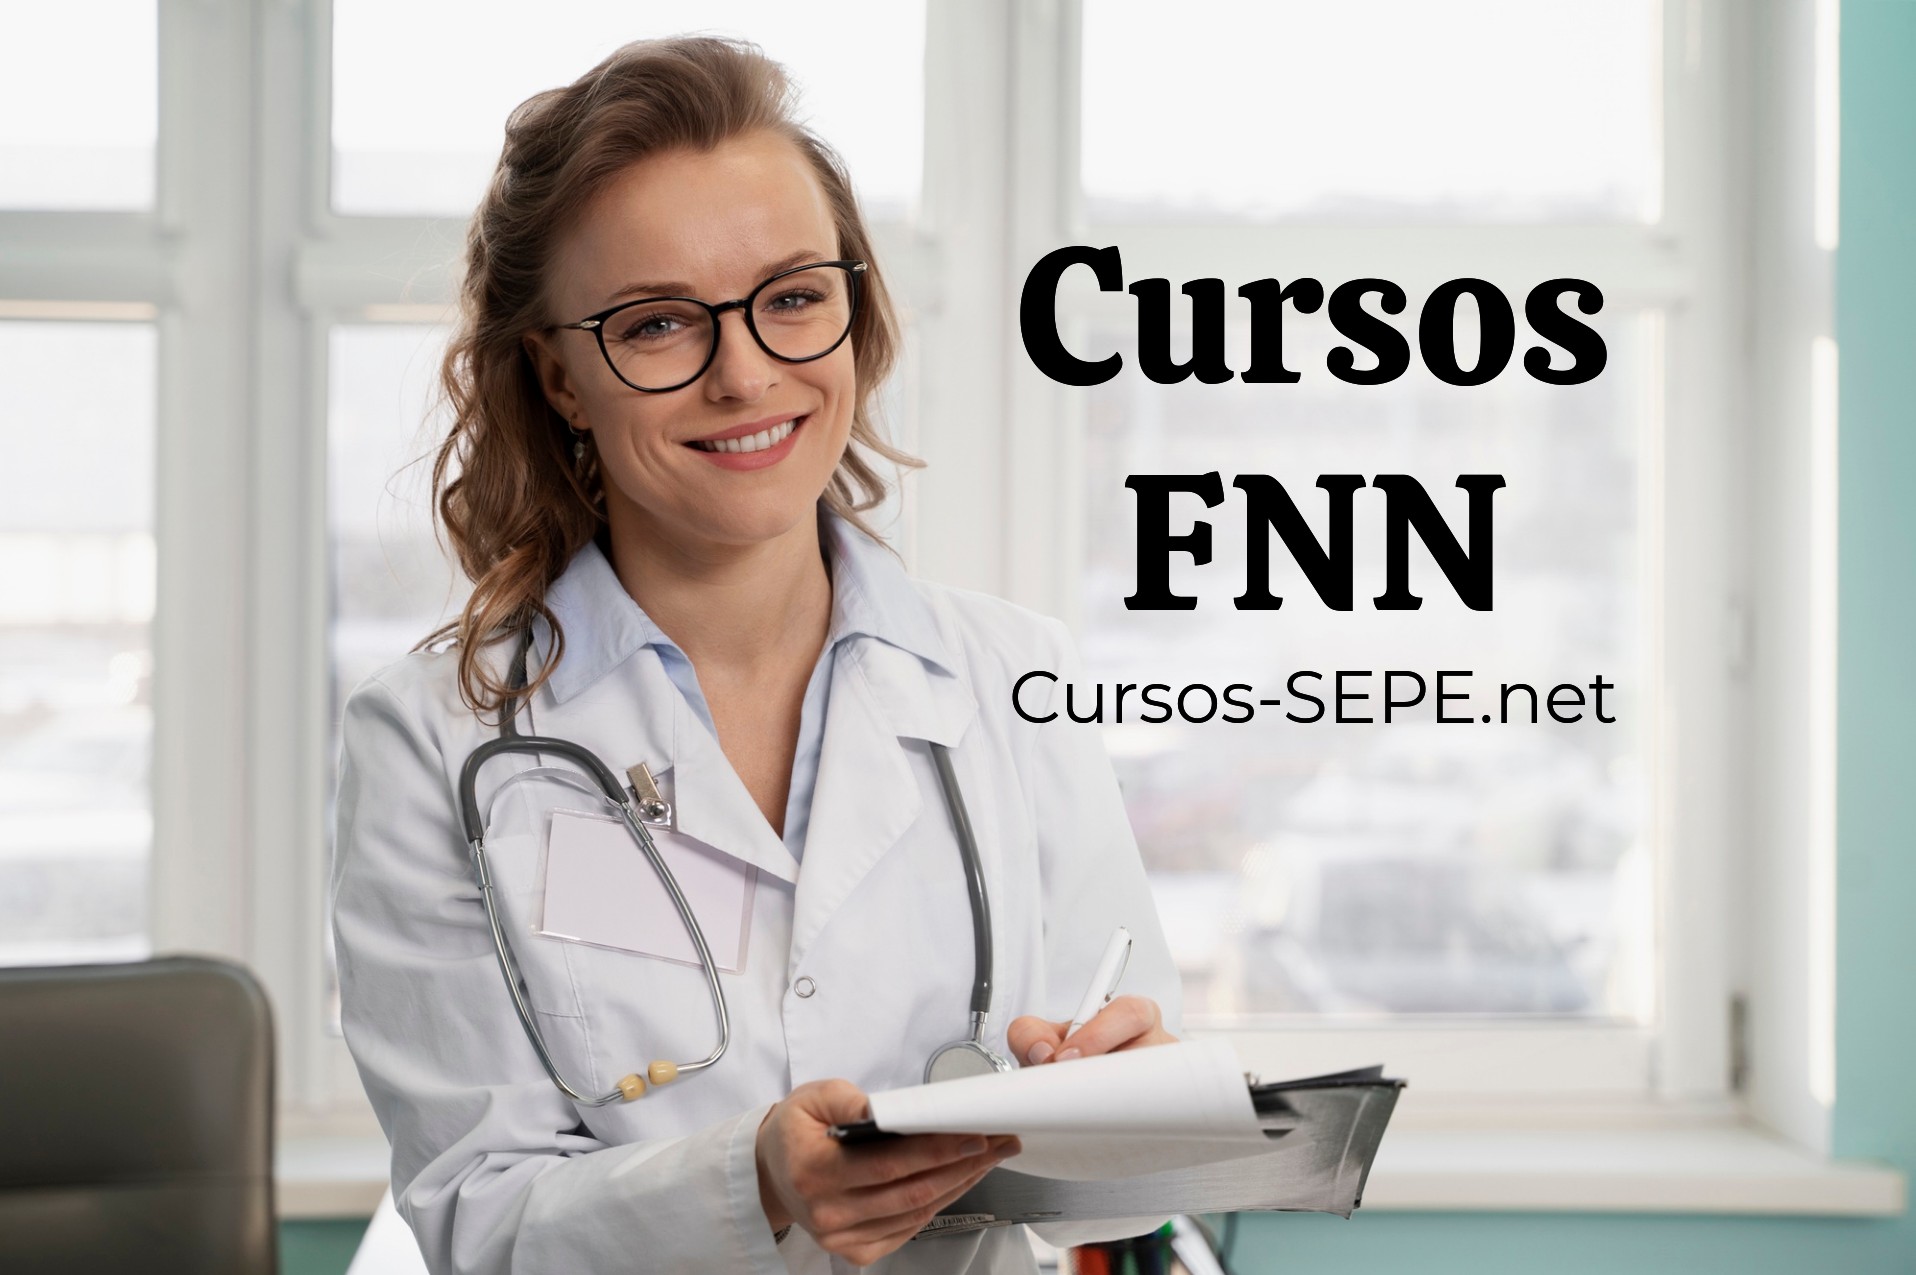 Accede al listado de todos los cursos FNN disponibles para mejorar tu formación y experiencia laboral en el sector sanitario y farmacéutico